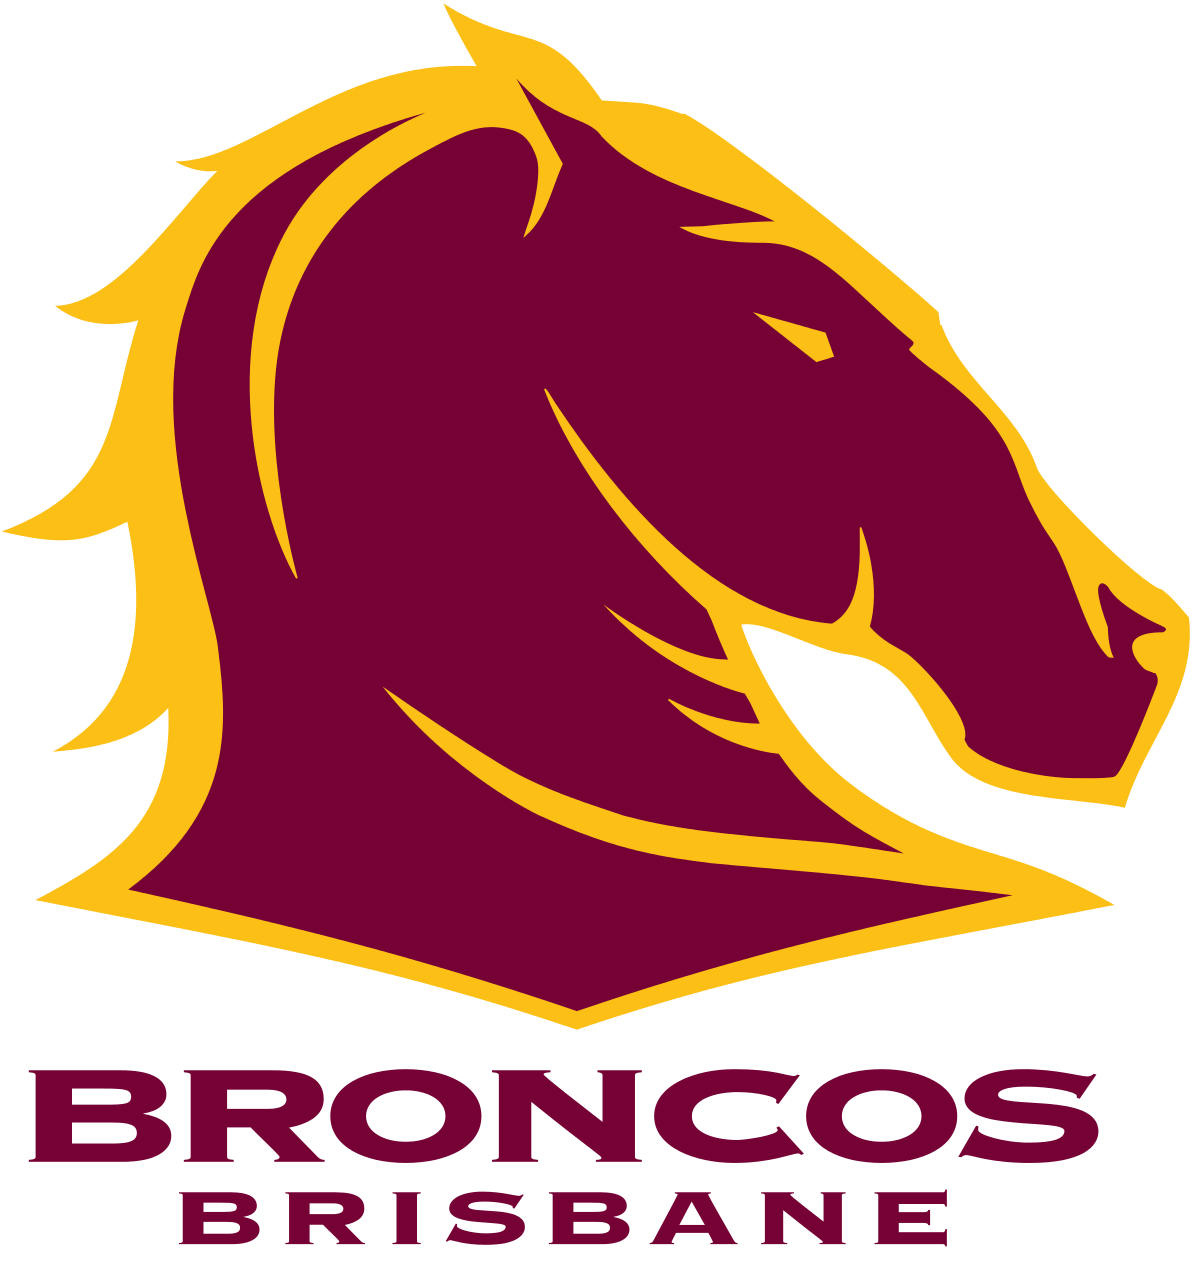 Broncos Old Logo - Brisbane Broncos